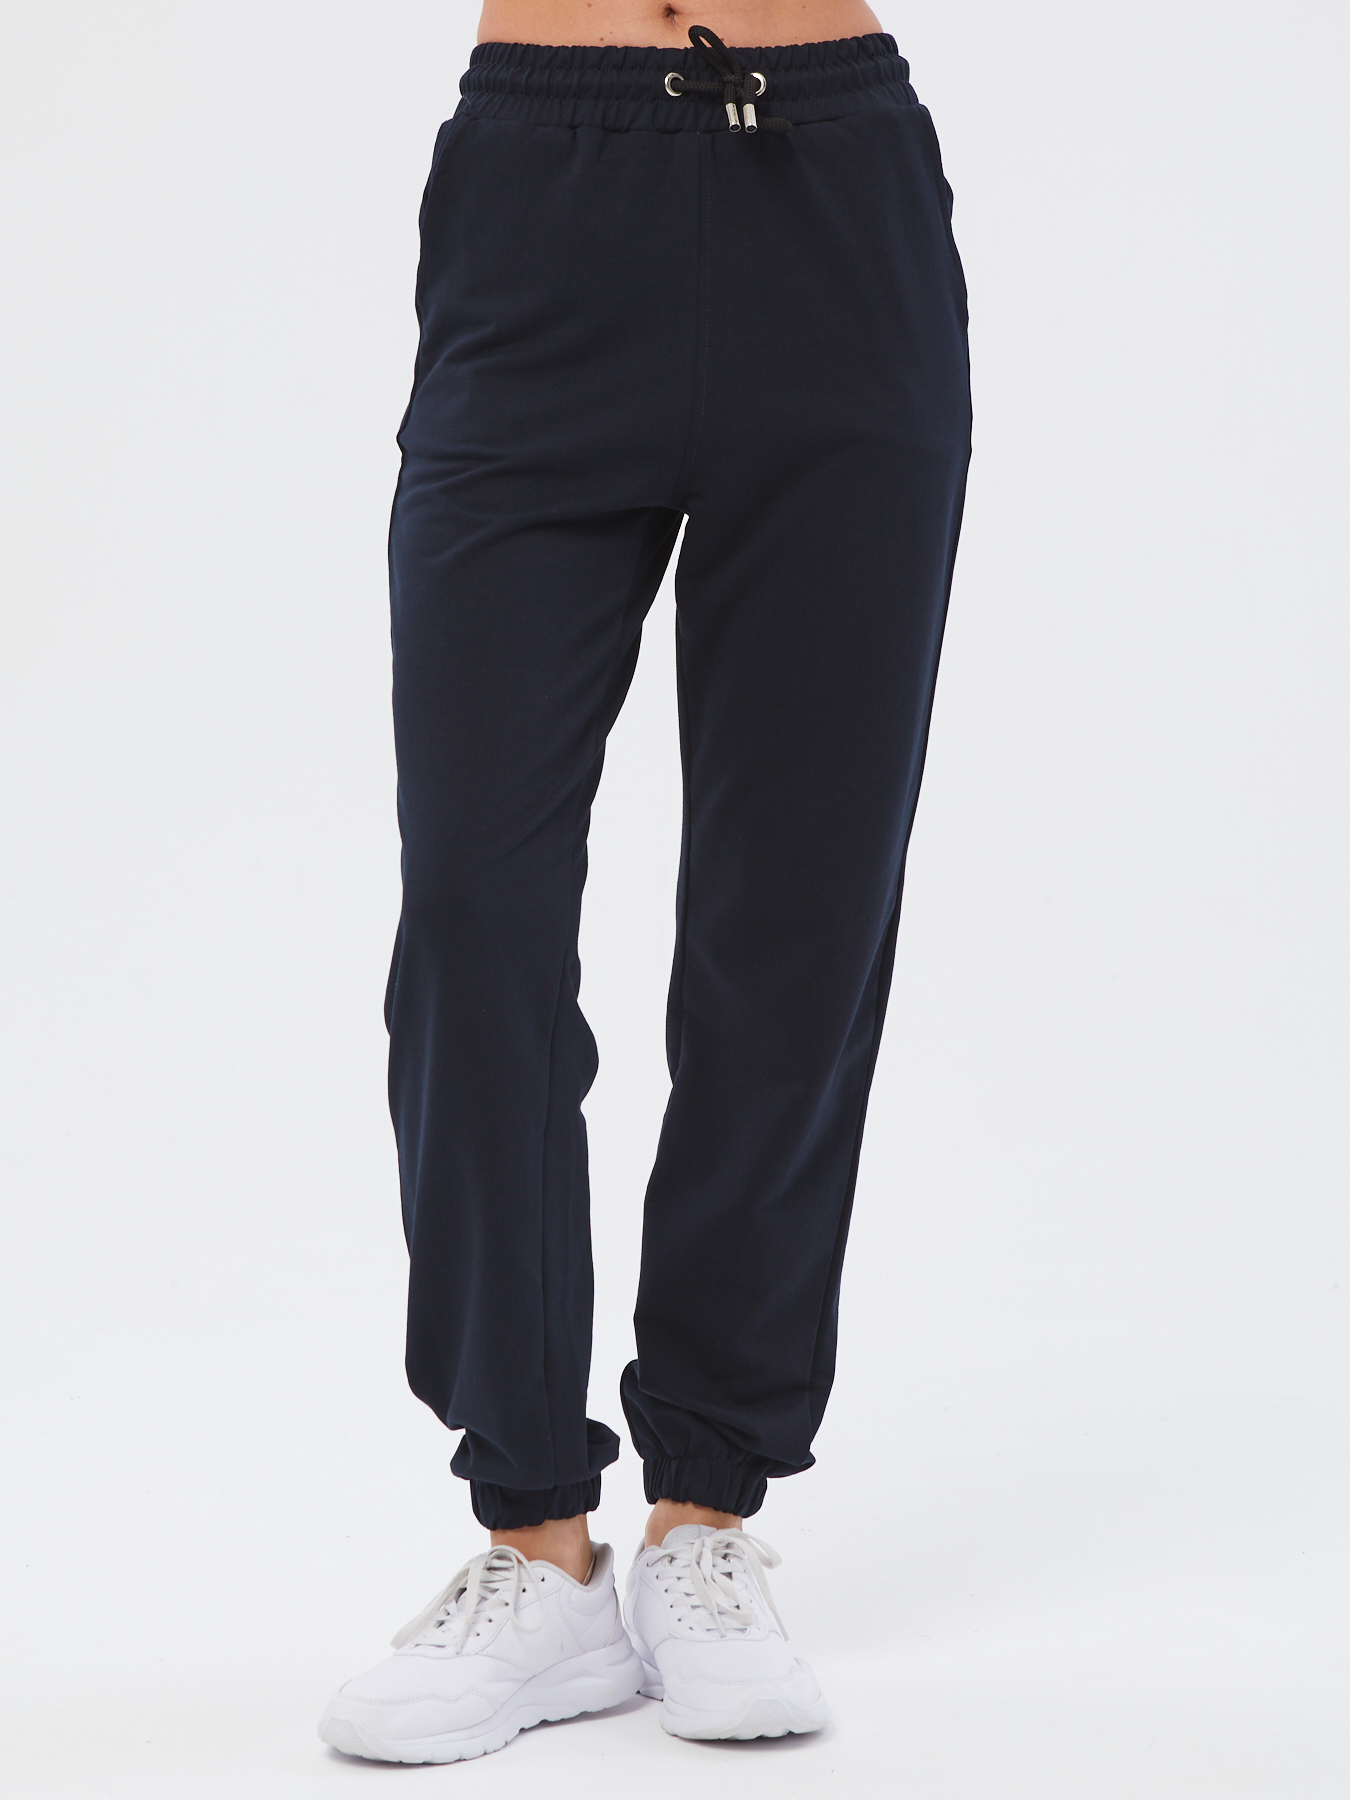 Спортивные брюки женские Still-expert б5 синие 48/165-180